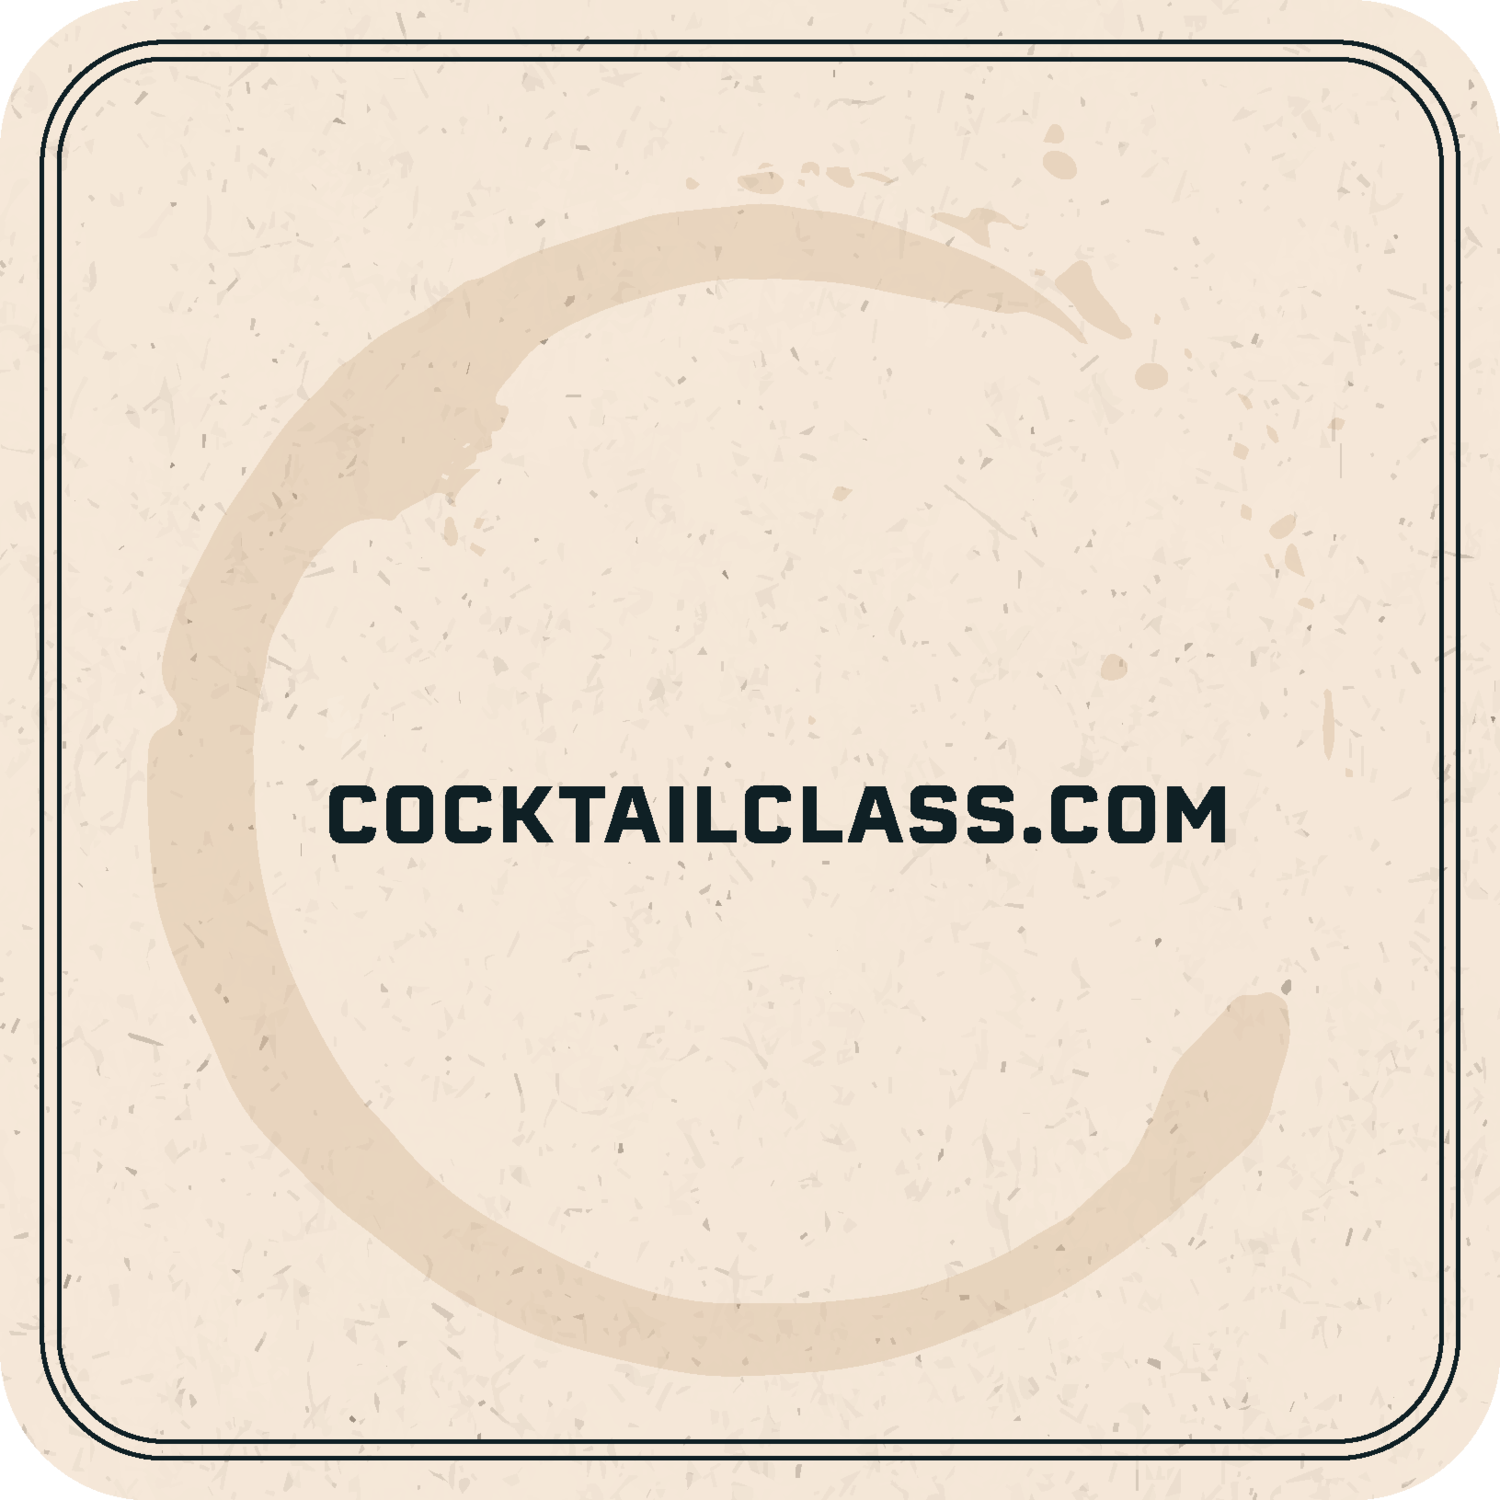 Cocktailclass.com